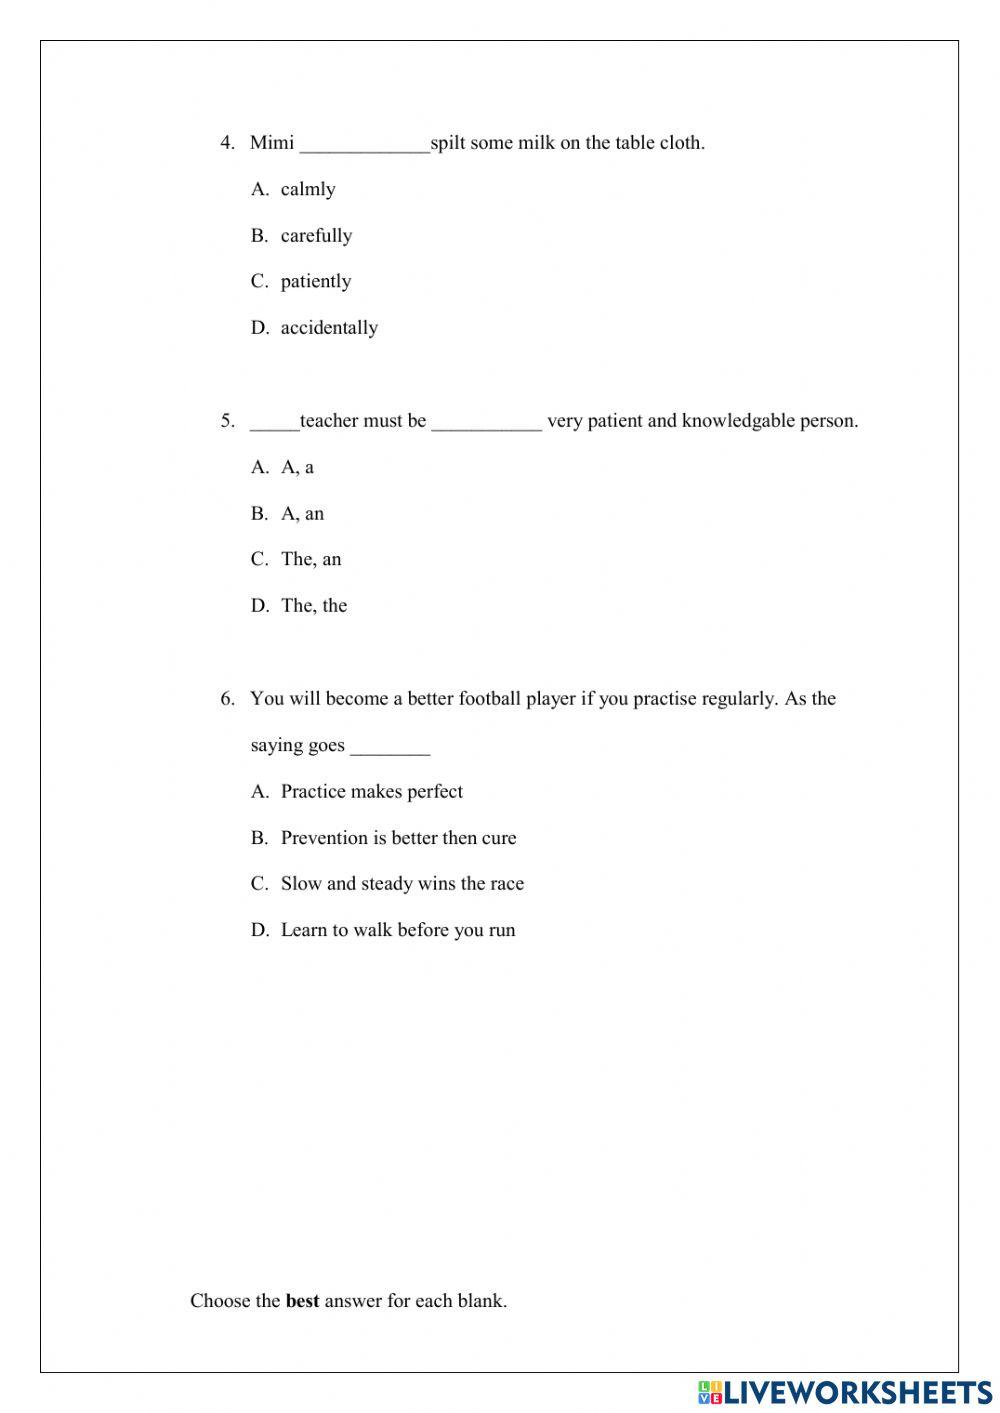 Praktis 1 : english upsr paper 1